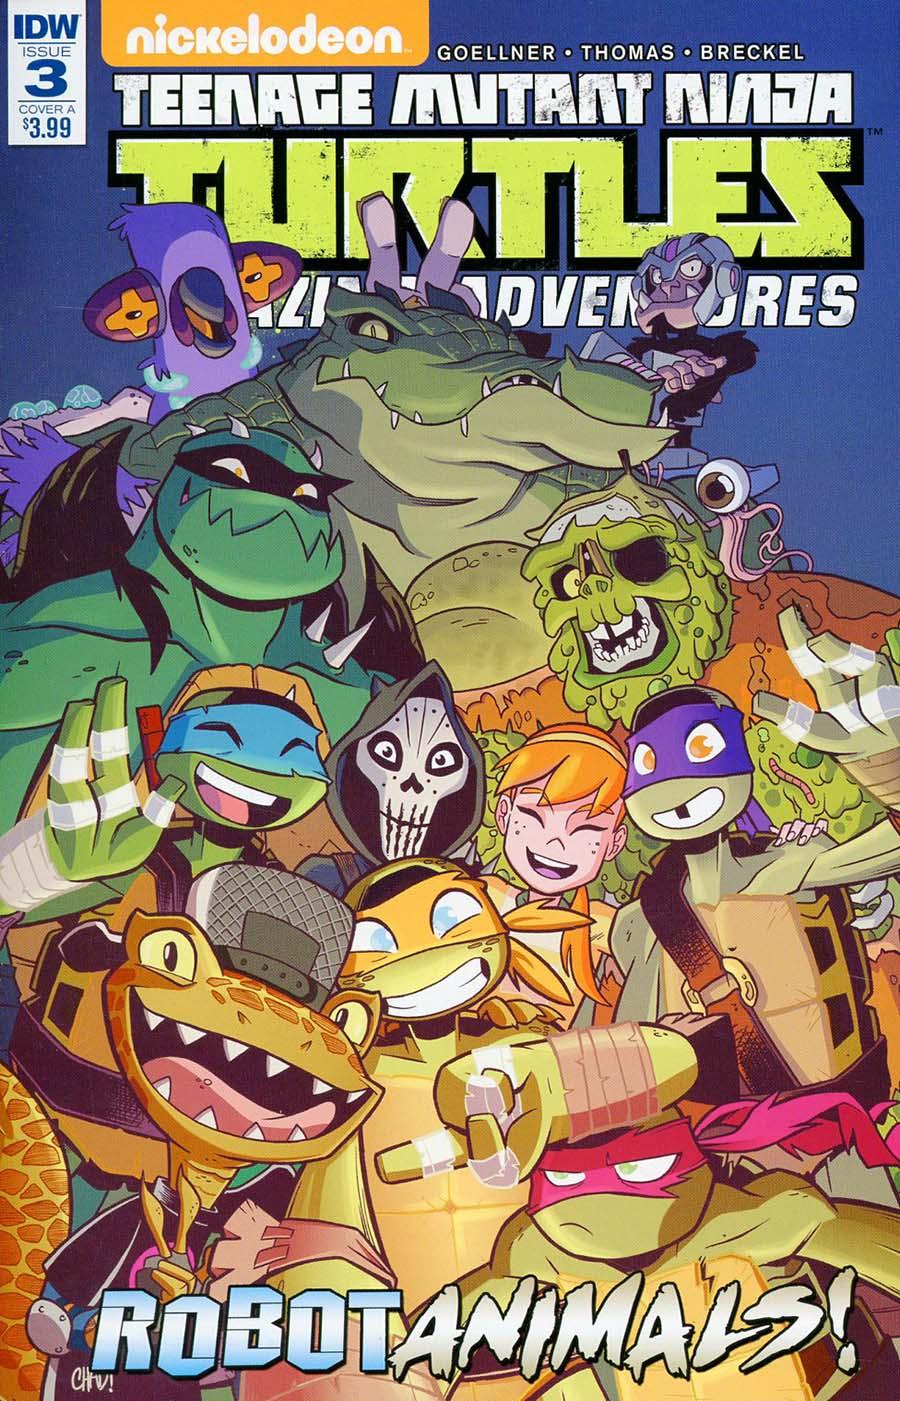 Teenage Mutant Ninja Turtles Amazing Adventures Robotanimals Vol. 1 #3